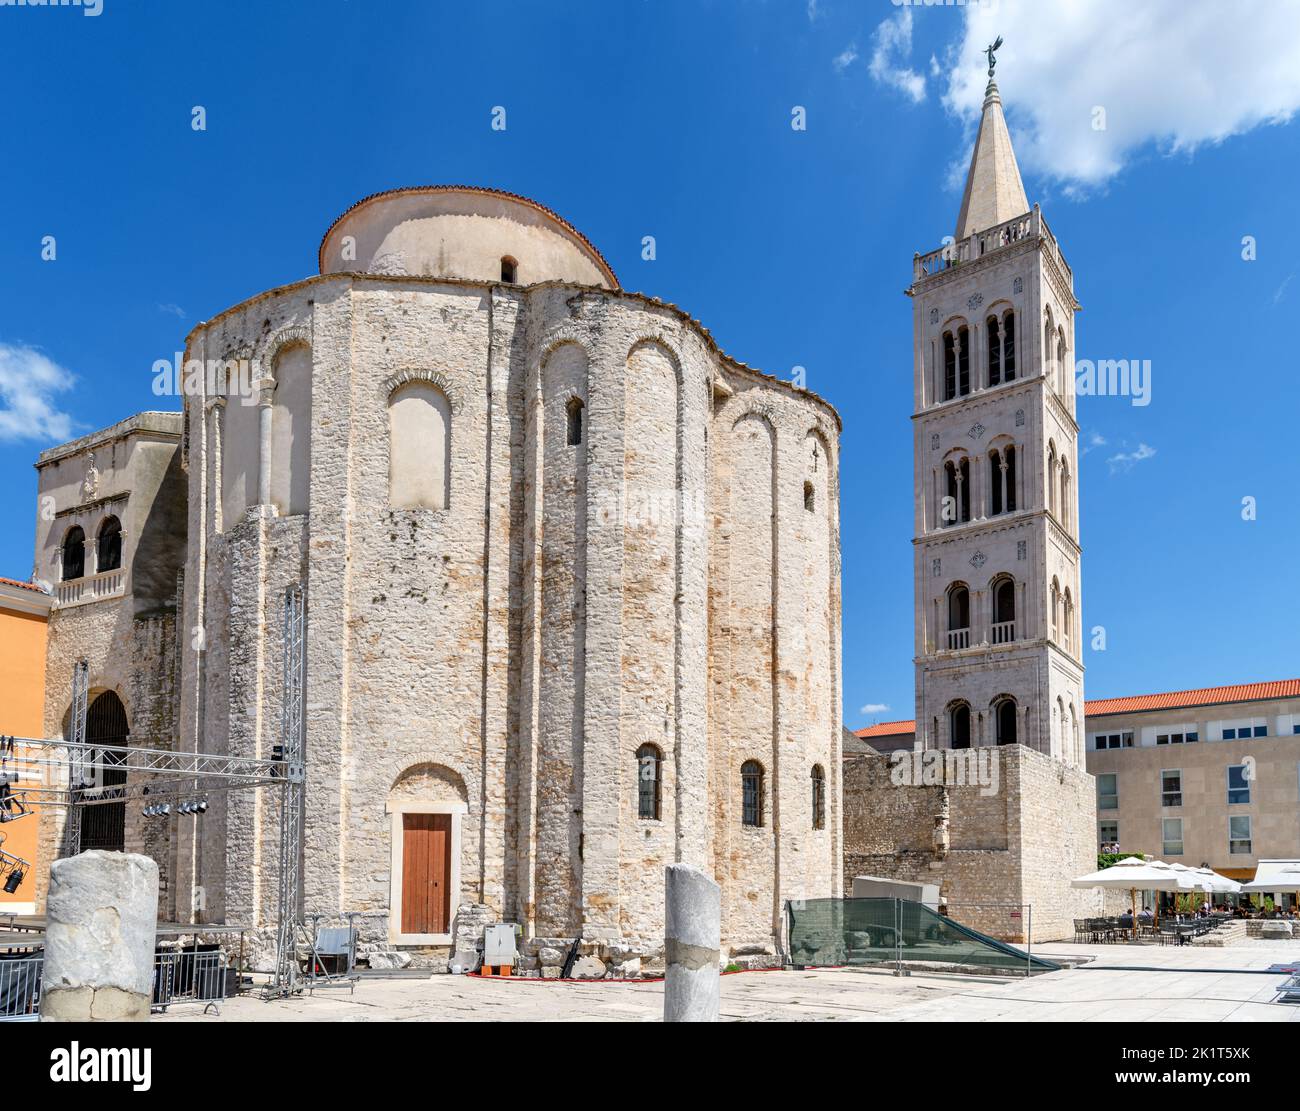 Der Glockenturm der St. Anastasia-Kathedrale und die St. Donatus-Kirche im historischen Zentrum von Zadar, Kroatien Stockfoto